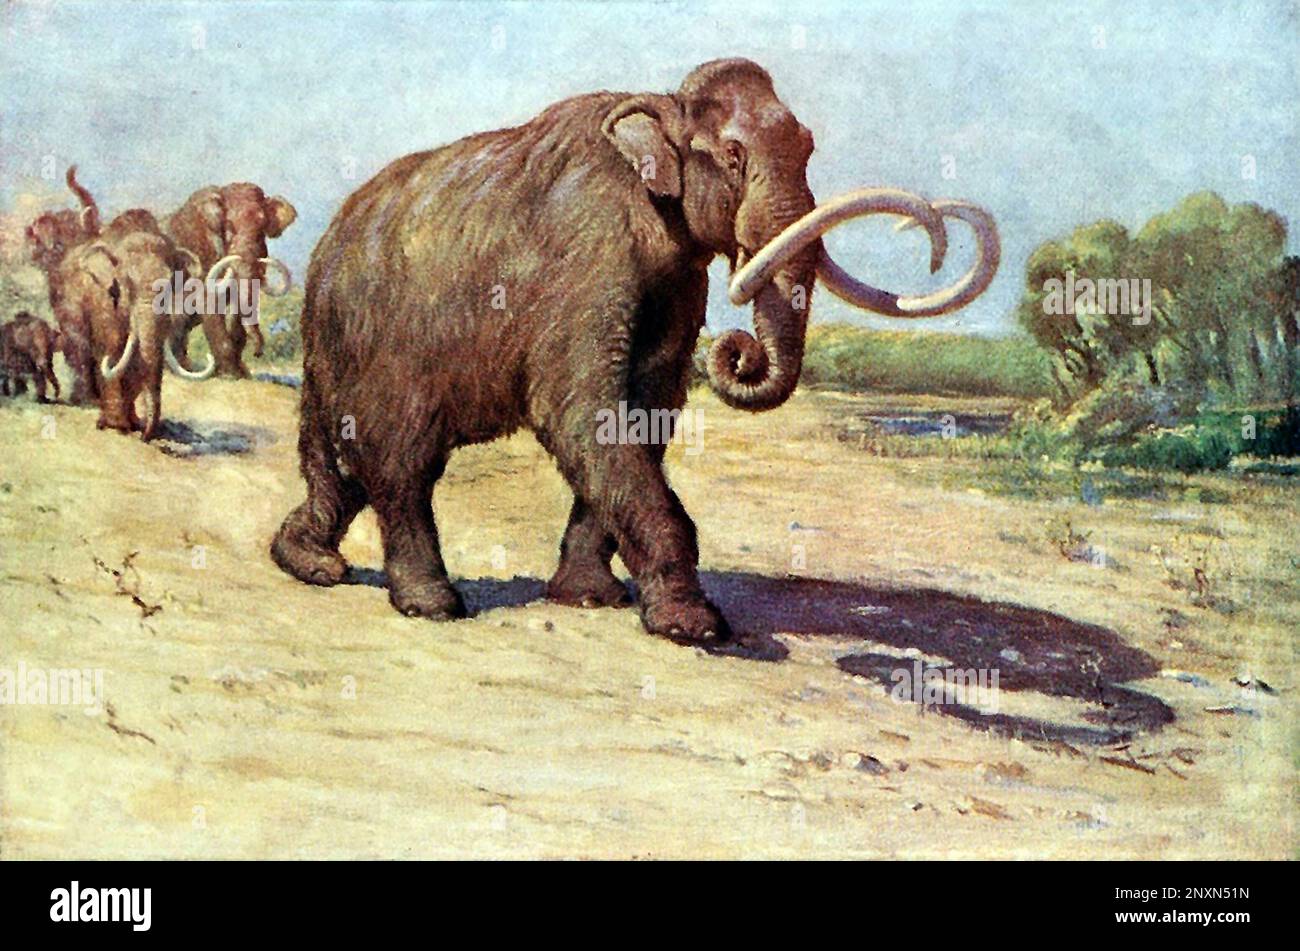 Das kolumbianische Mammut (Mammuthus columbi) ist eine ausgestorbene Mammutart, die während der Epoche des Pleistozäns Nord- und Südamerika bewohnte. Illustration von Charles R. Knight (1874,Ai1953), basierend auf dem AMNH-Exemplar (vormals M. jeffersonii), 1909. Stockfoto